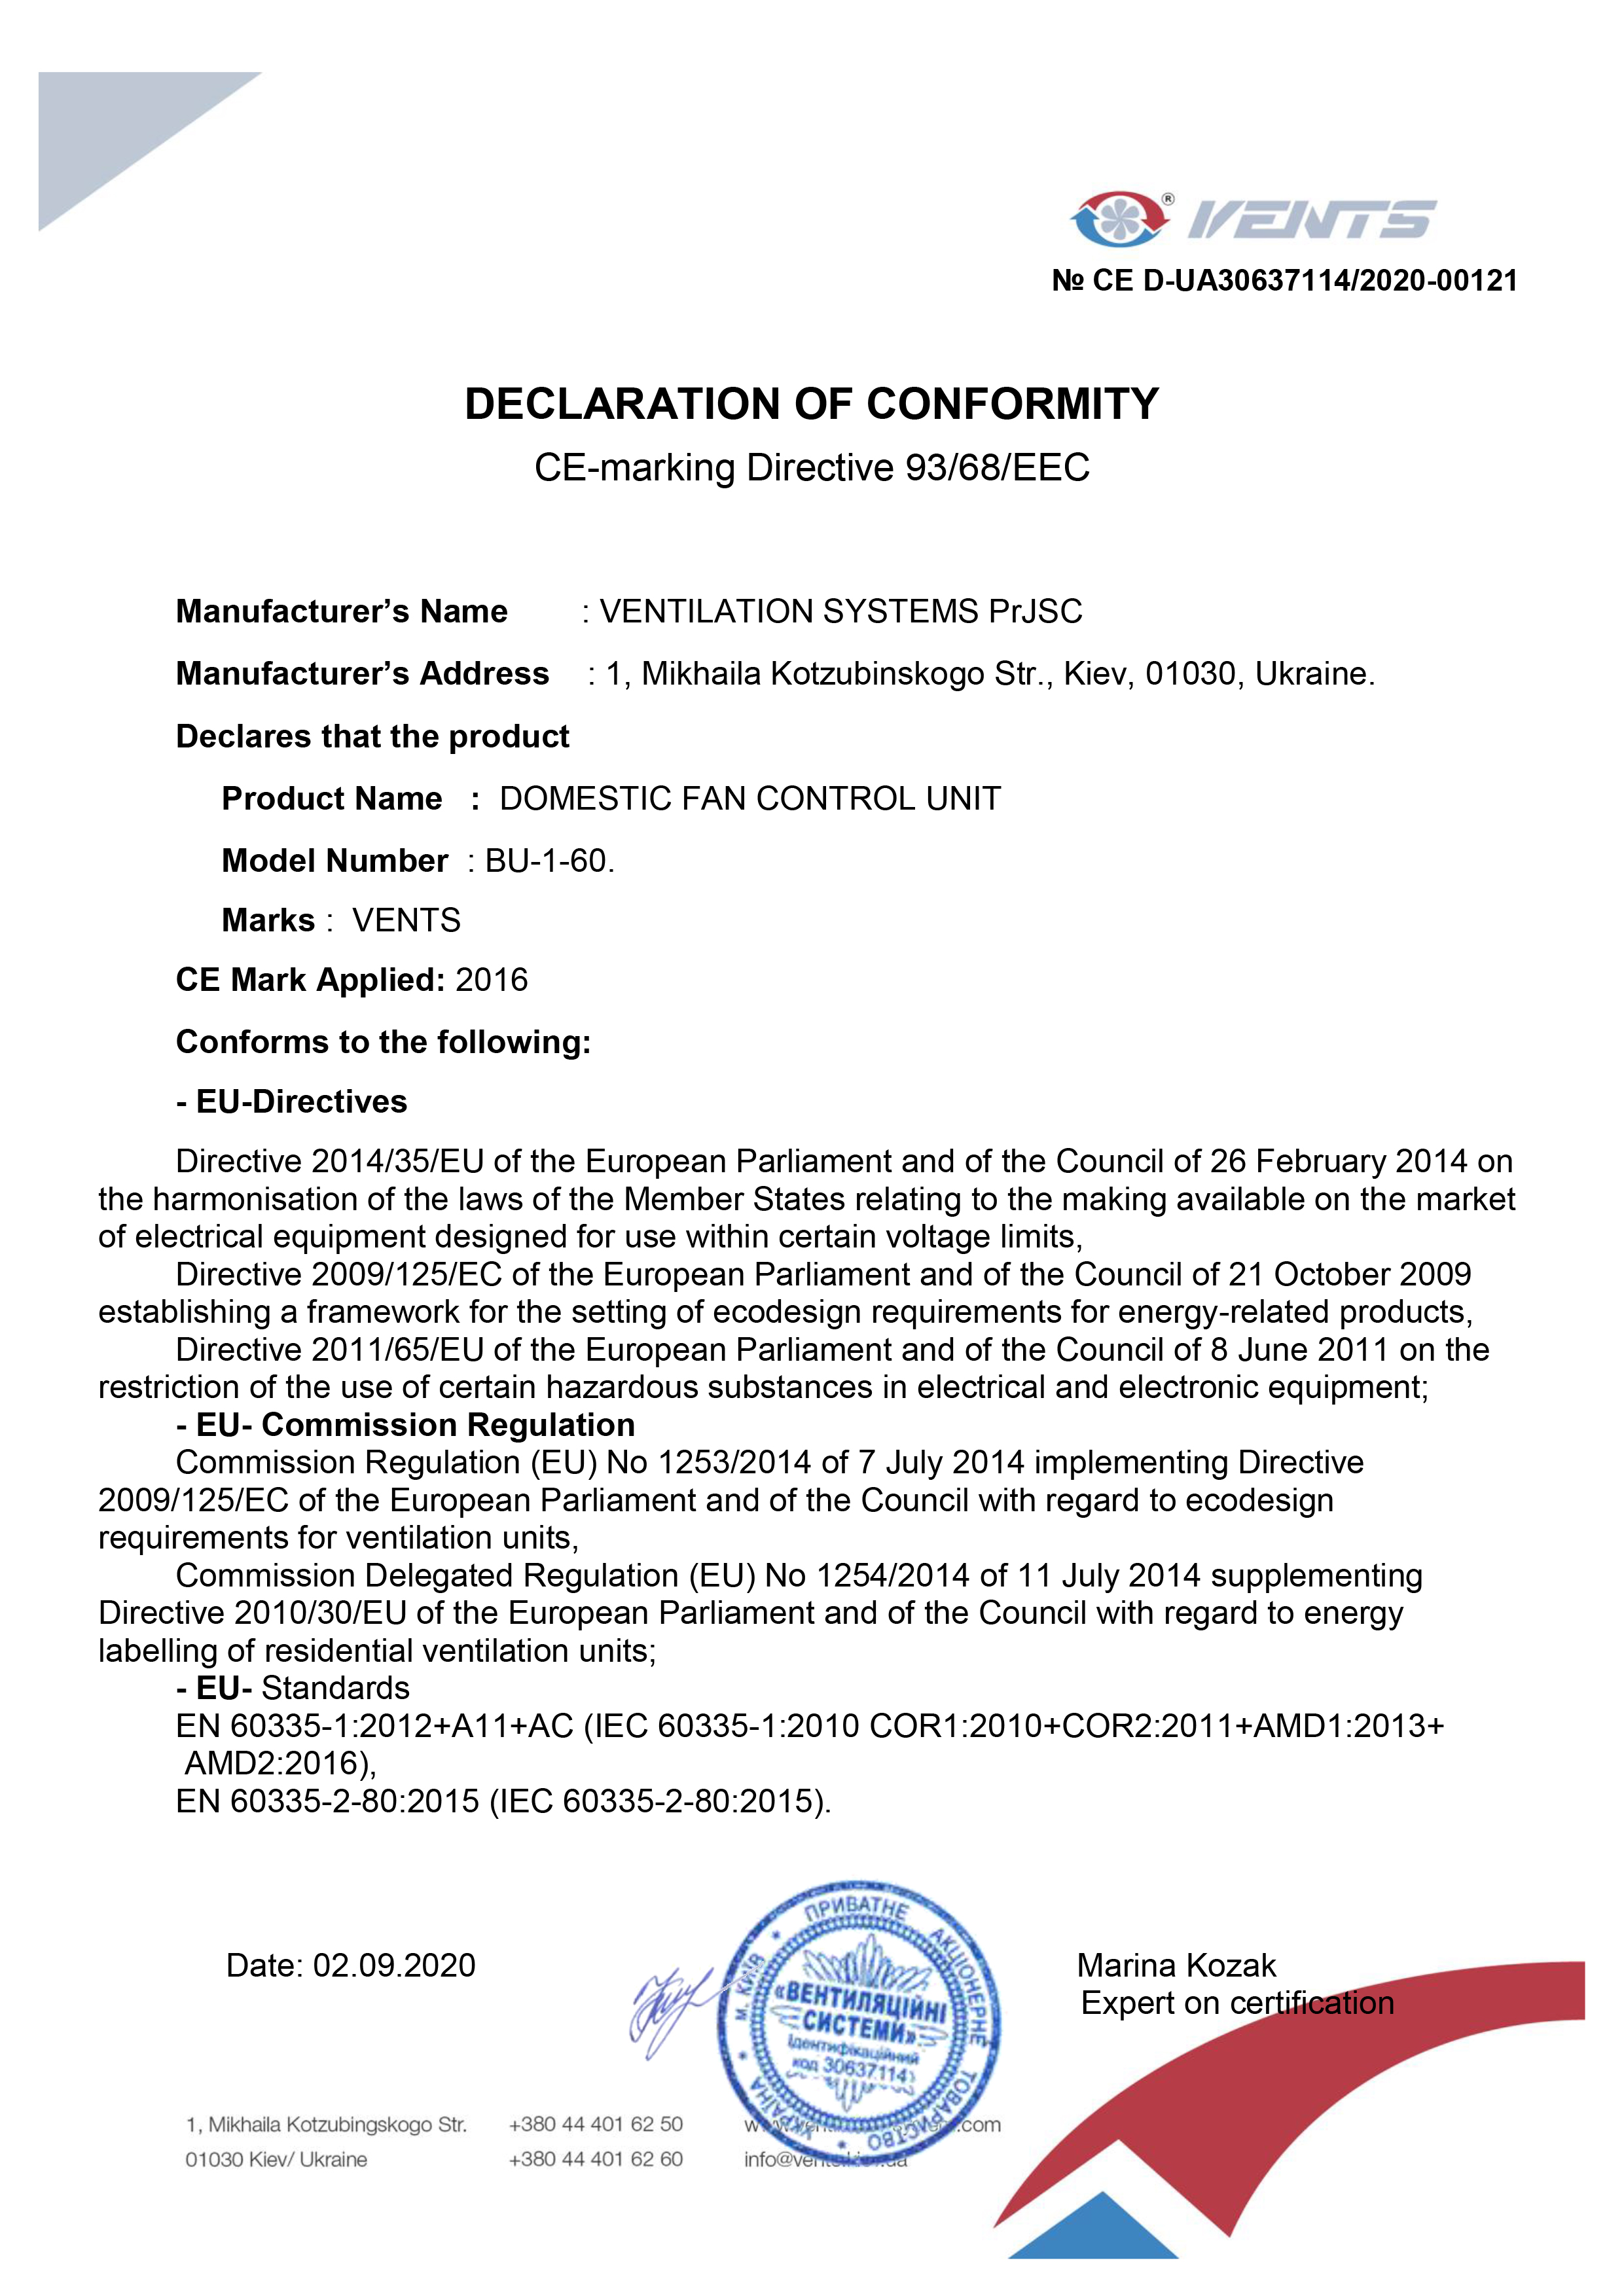 DECLARATION of CONFORMITY "BU-1-60"